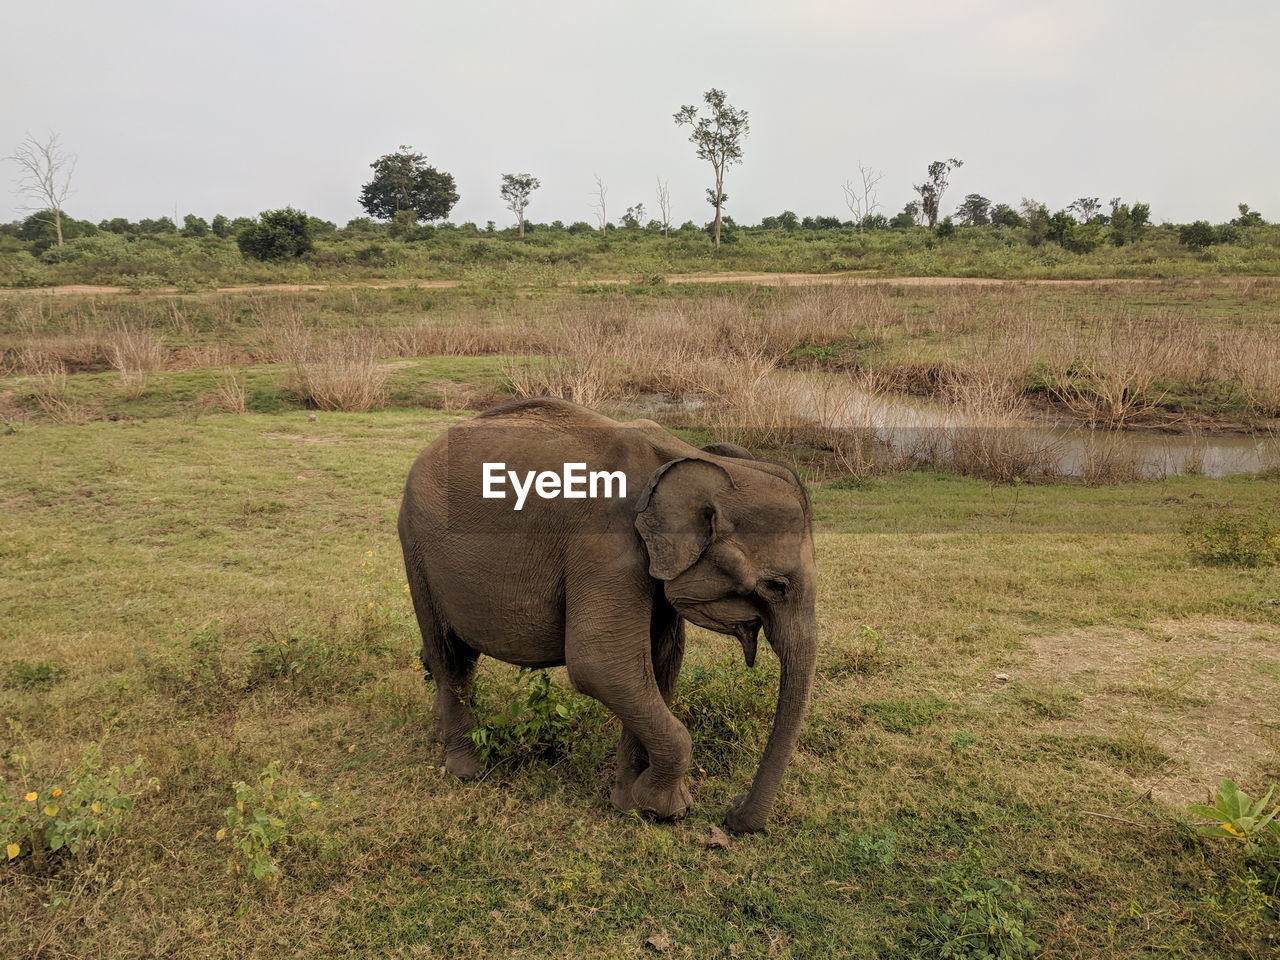 ELEPHANT IN FIELD